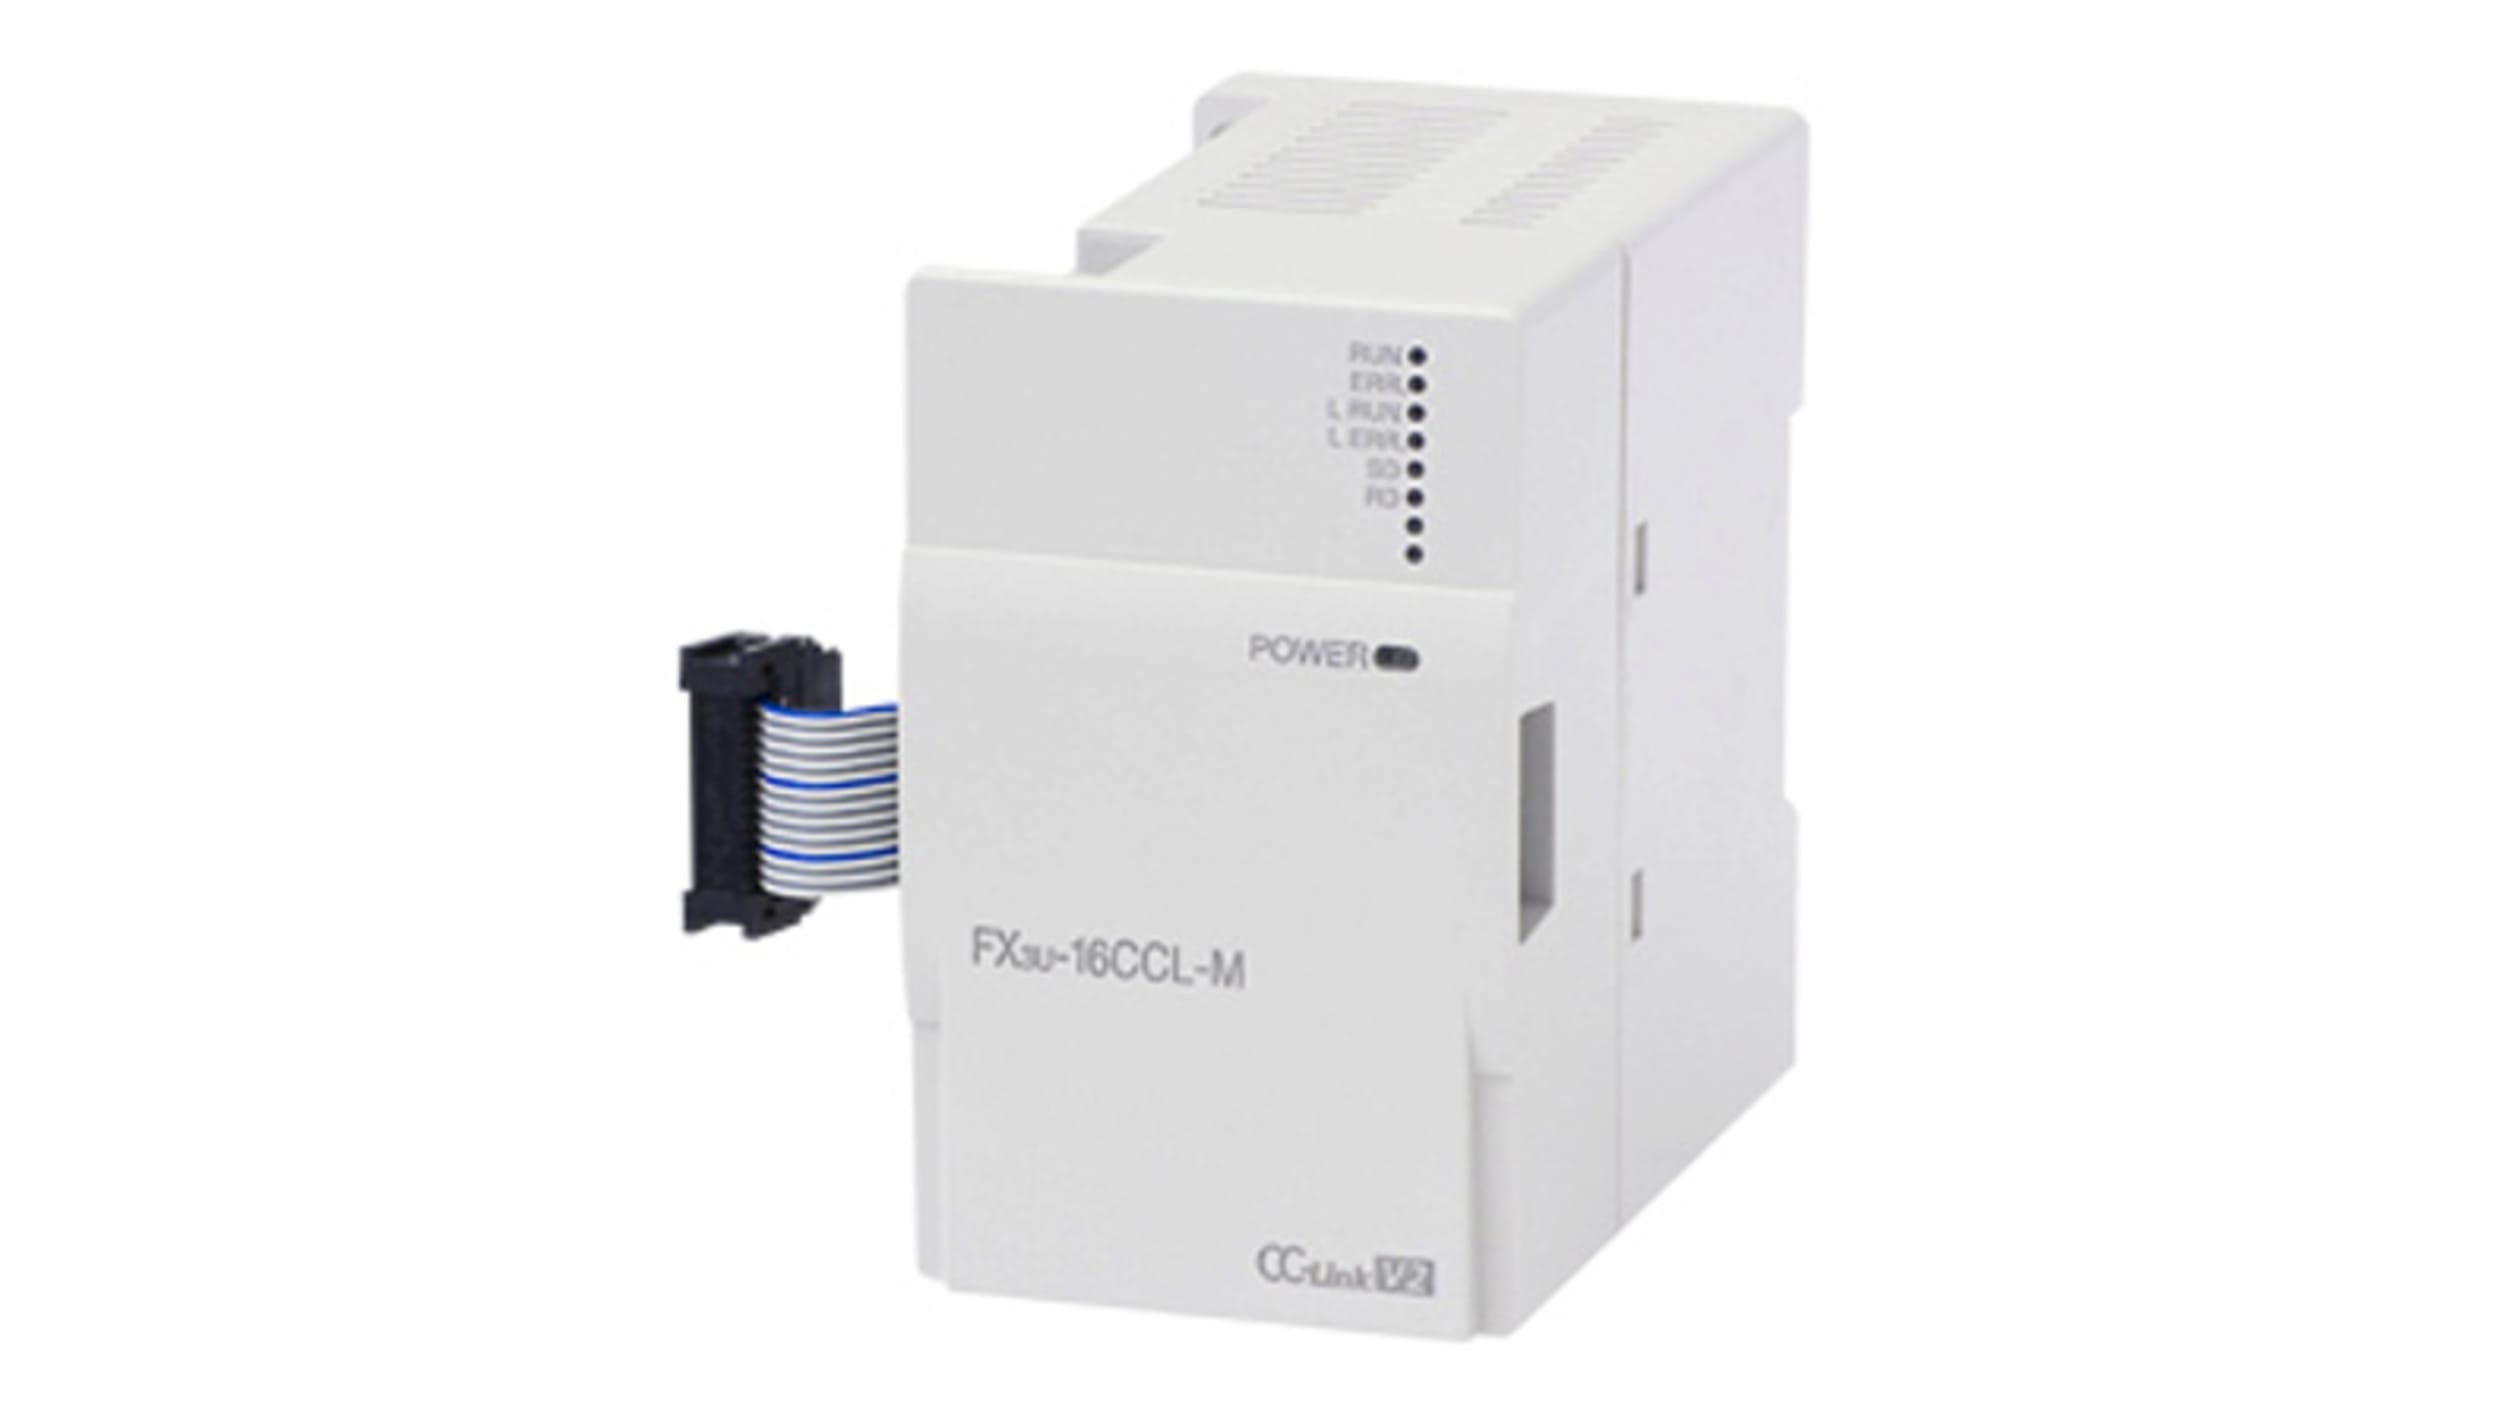 FX3U-16CCL-M 三菱電機 通信モジュール 通信モジュール iQ FX3 PLC, iQ FX3U PLC用 RS